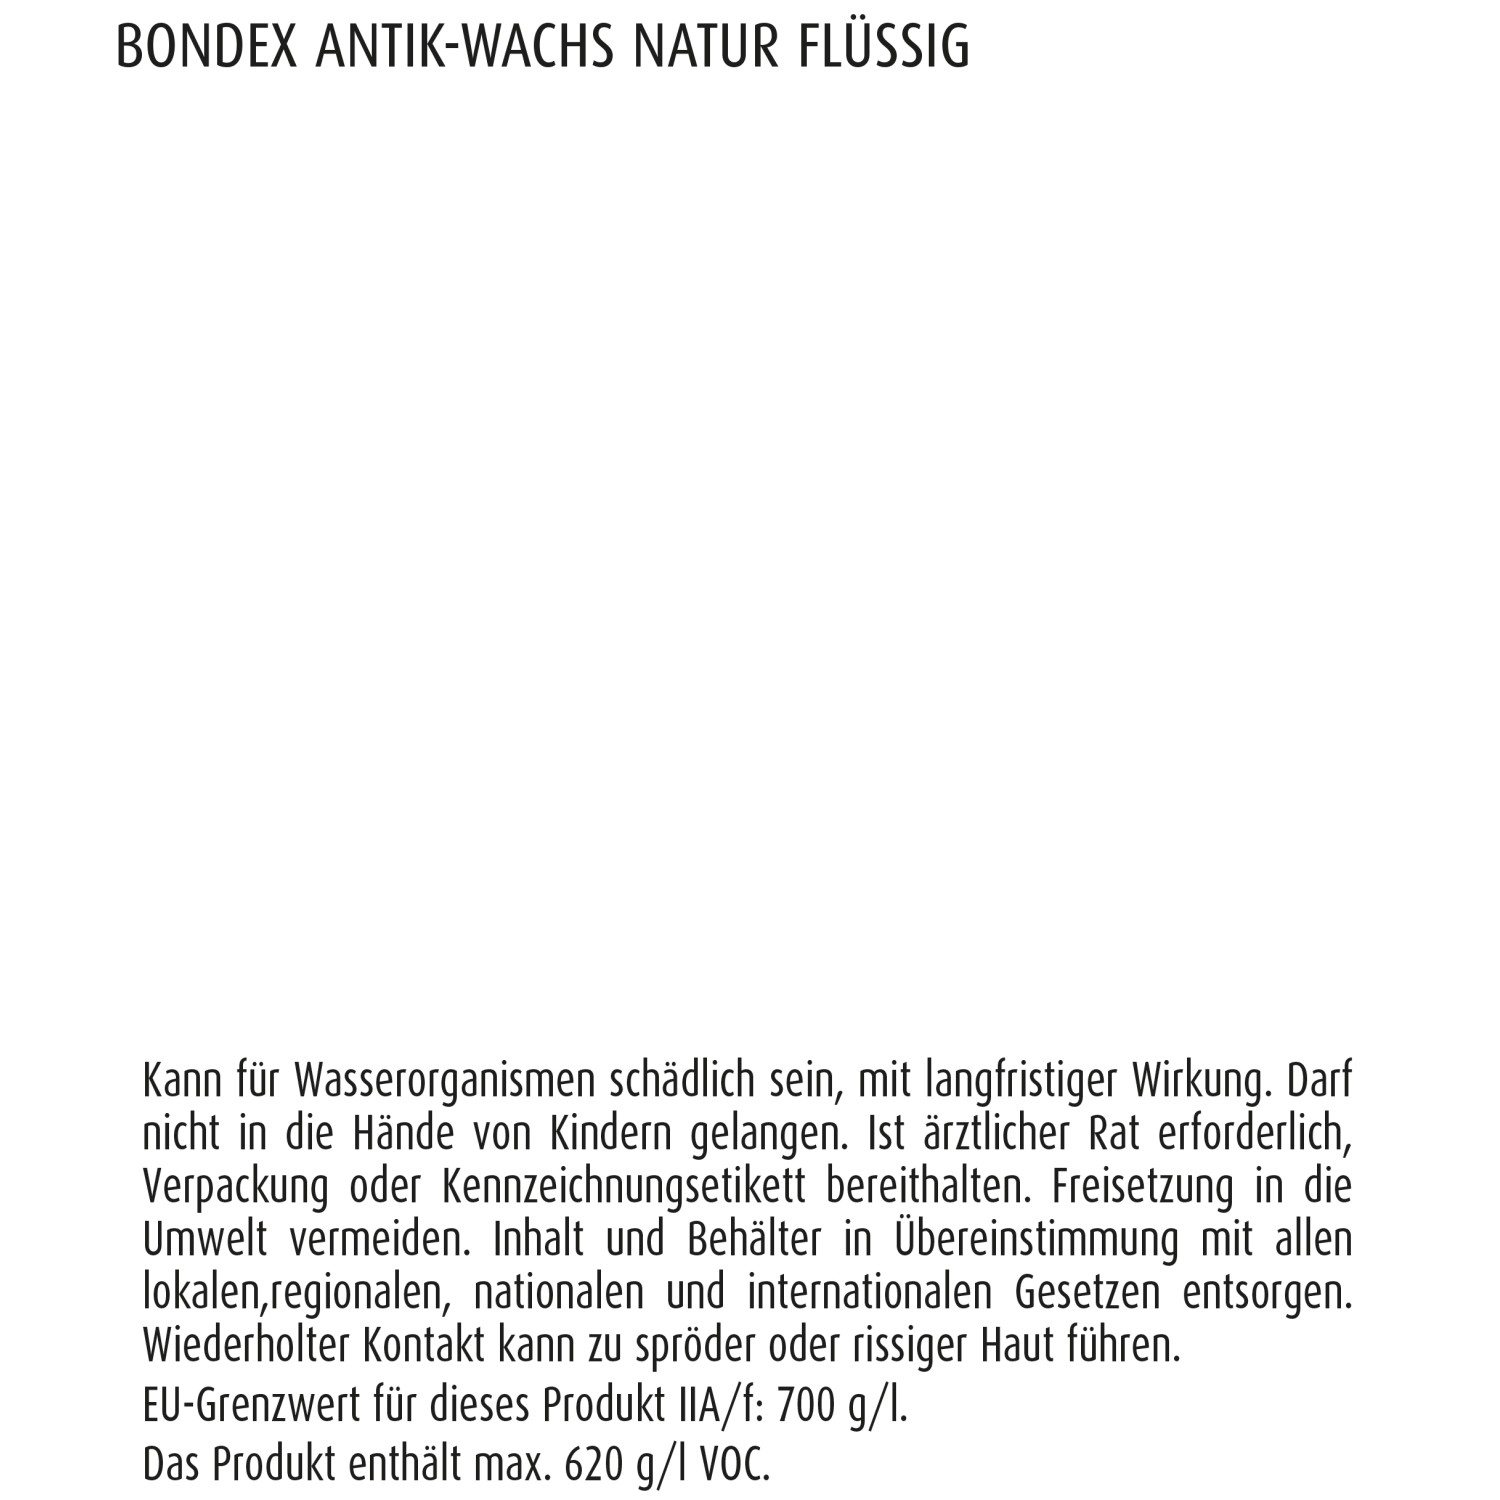 Bondex Antik-Wachs Natur flüssig 500 ml kaufen bei OBI